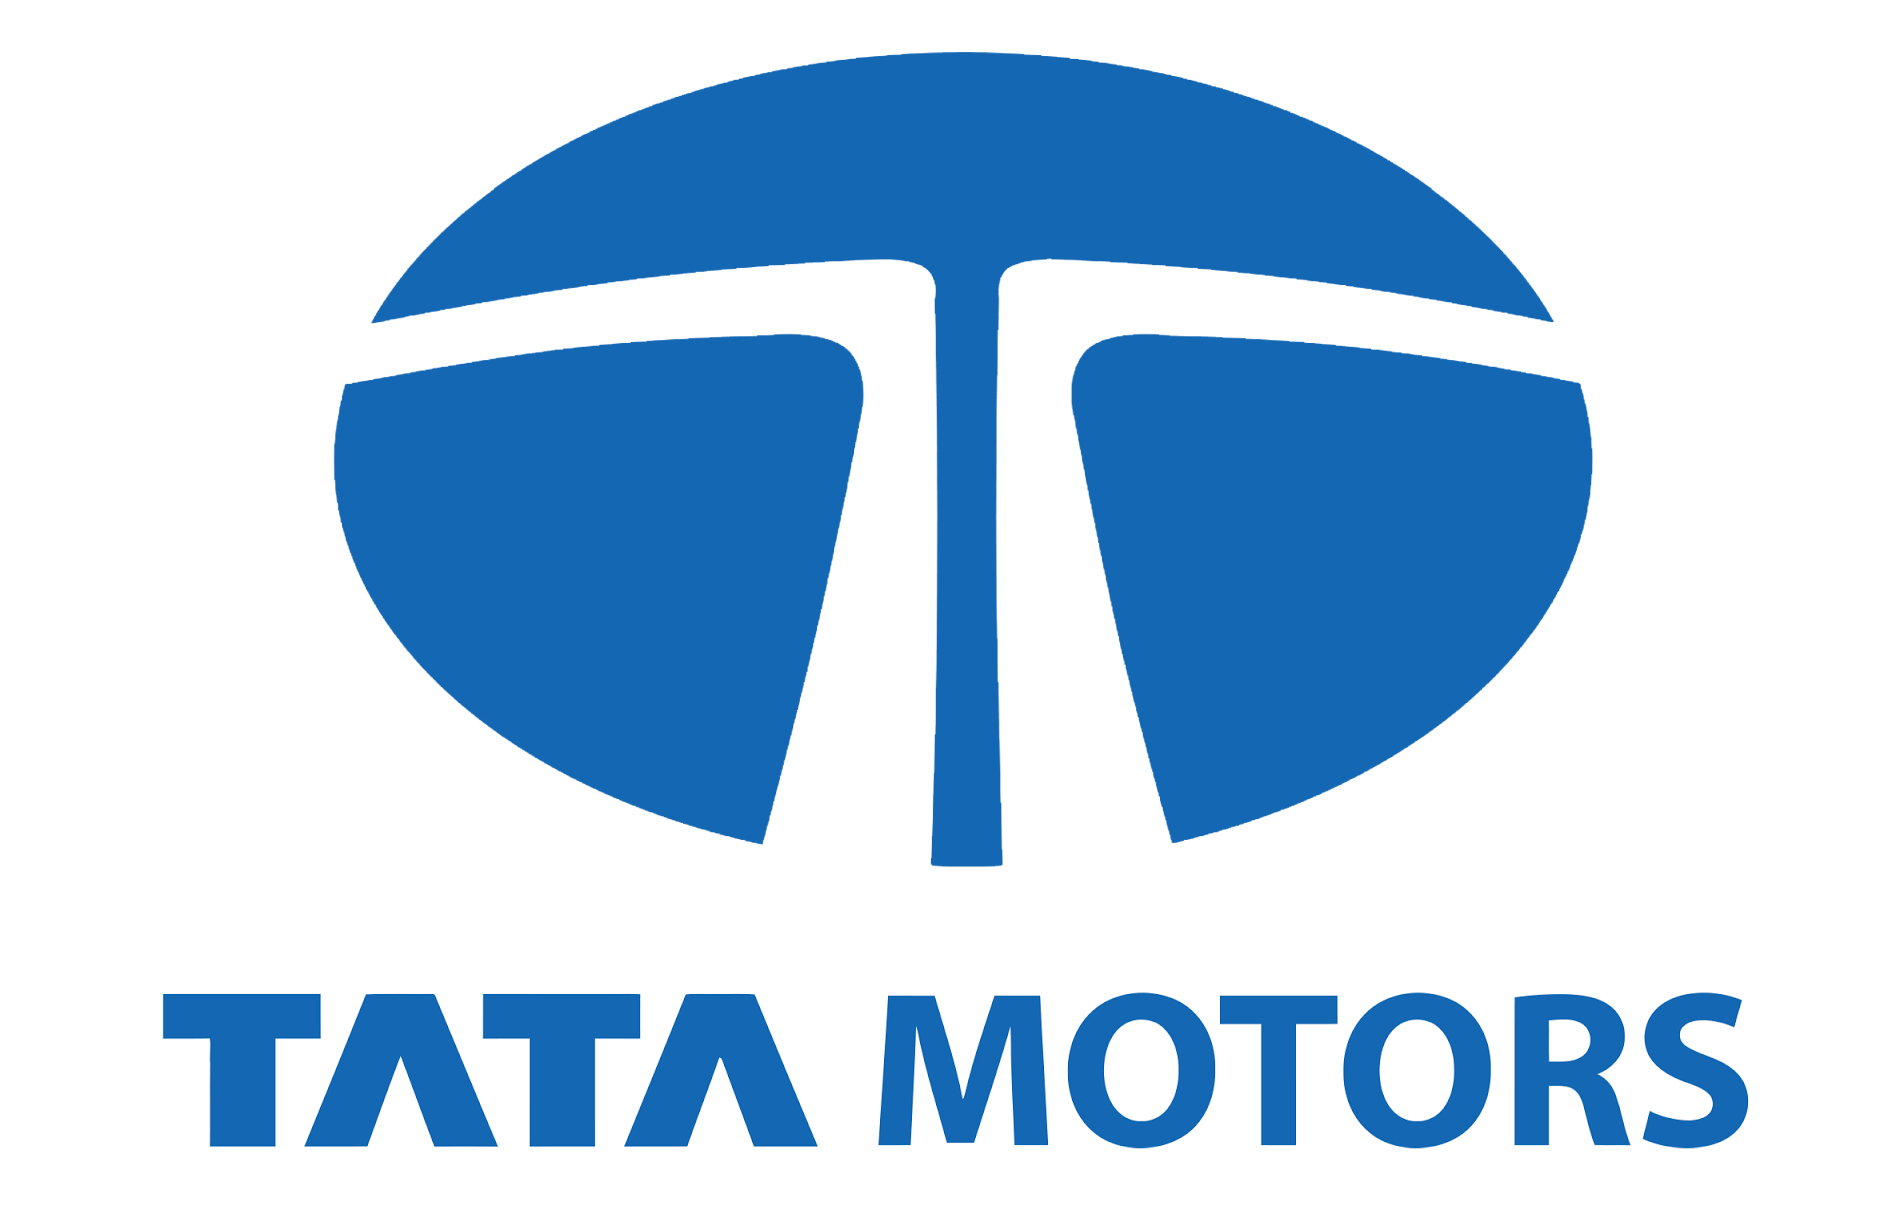 Siva Sankar Motors - Tata Motors Dealer - Logo